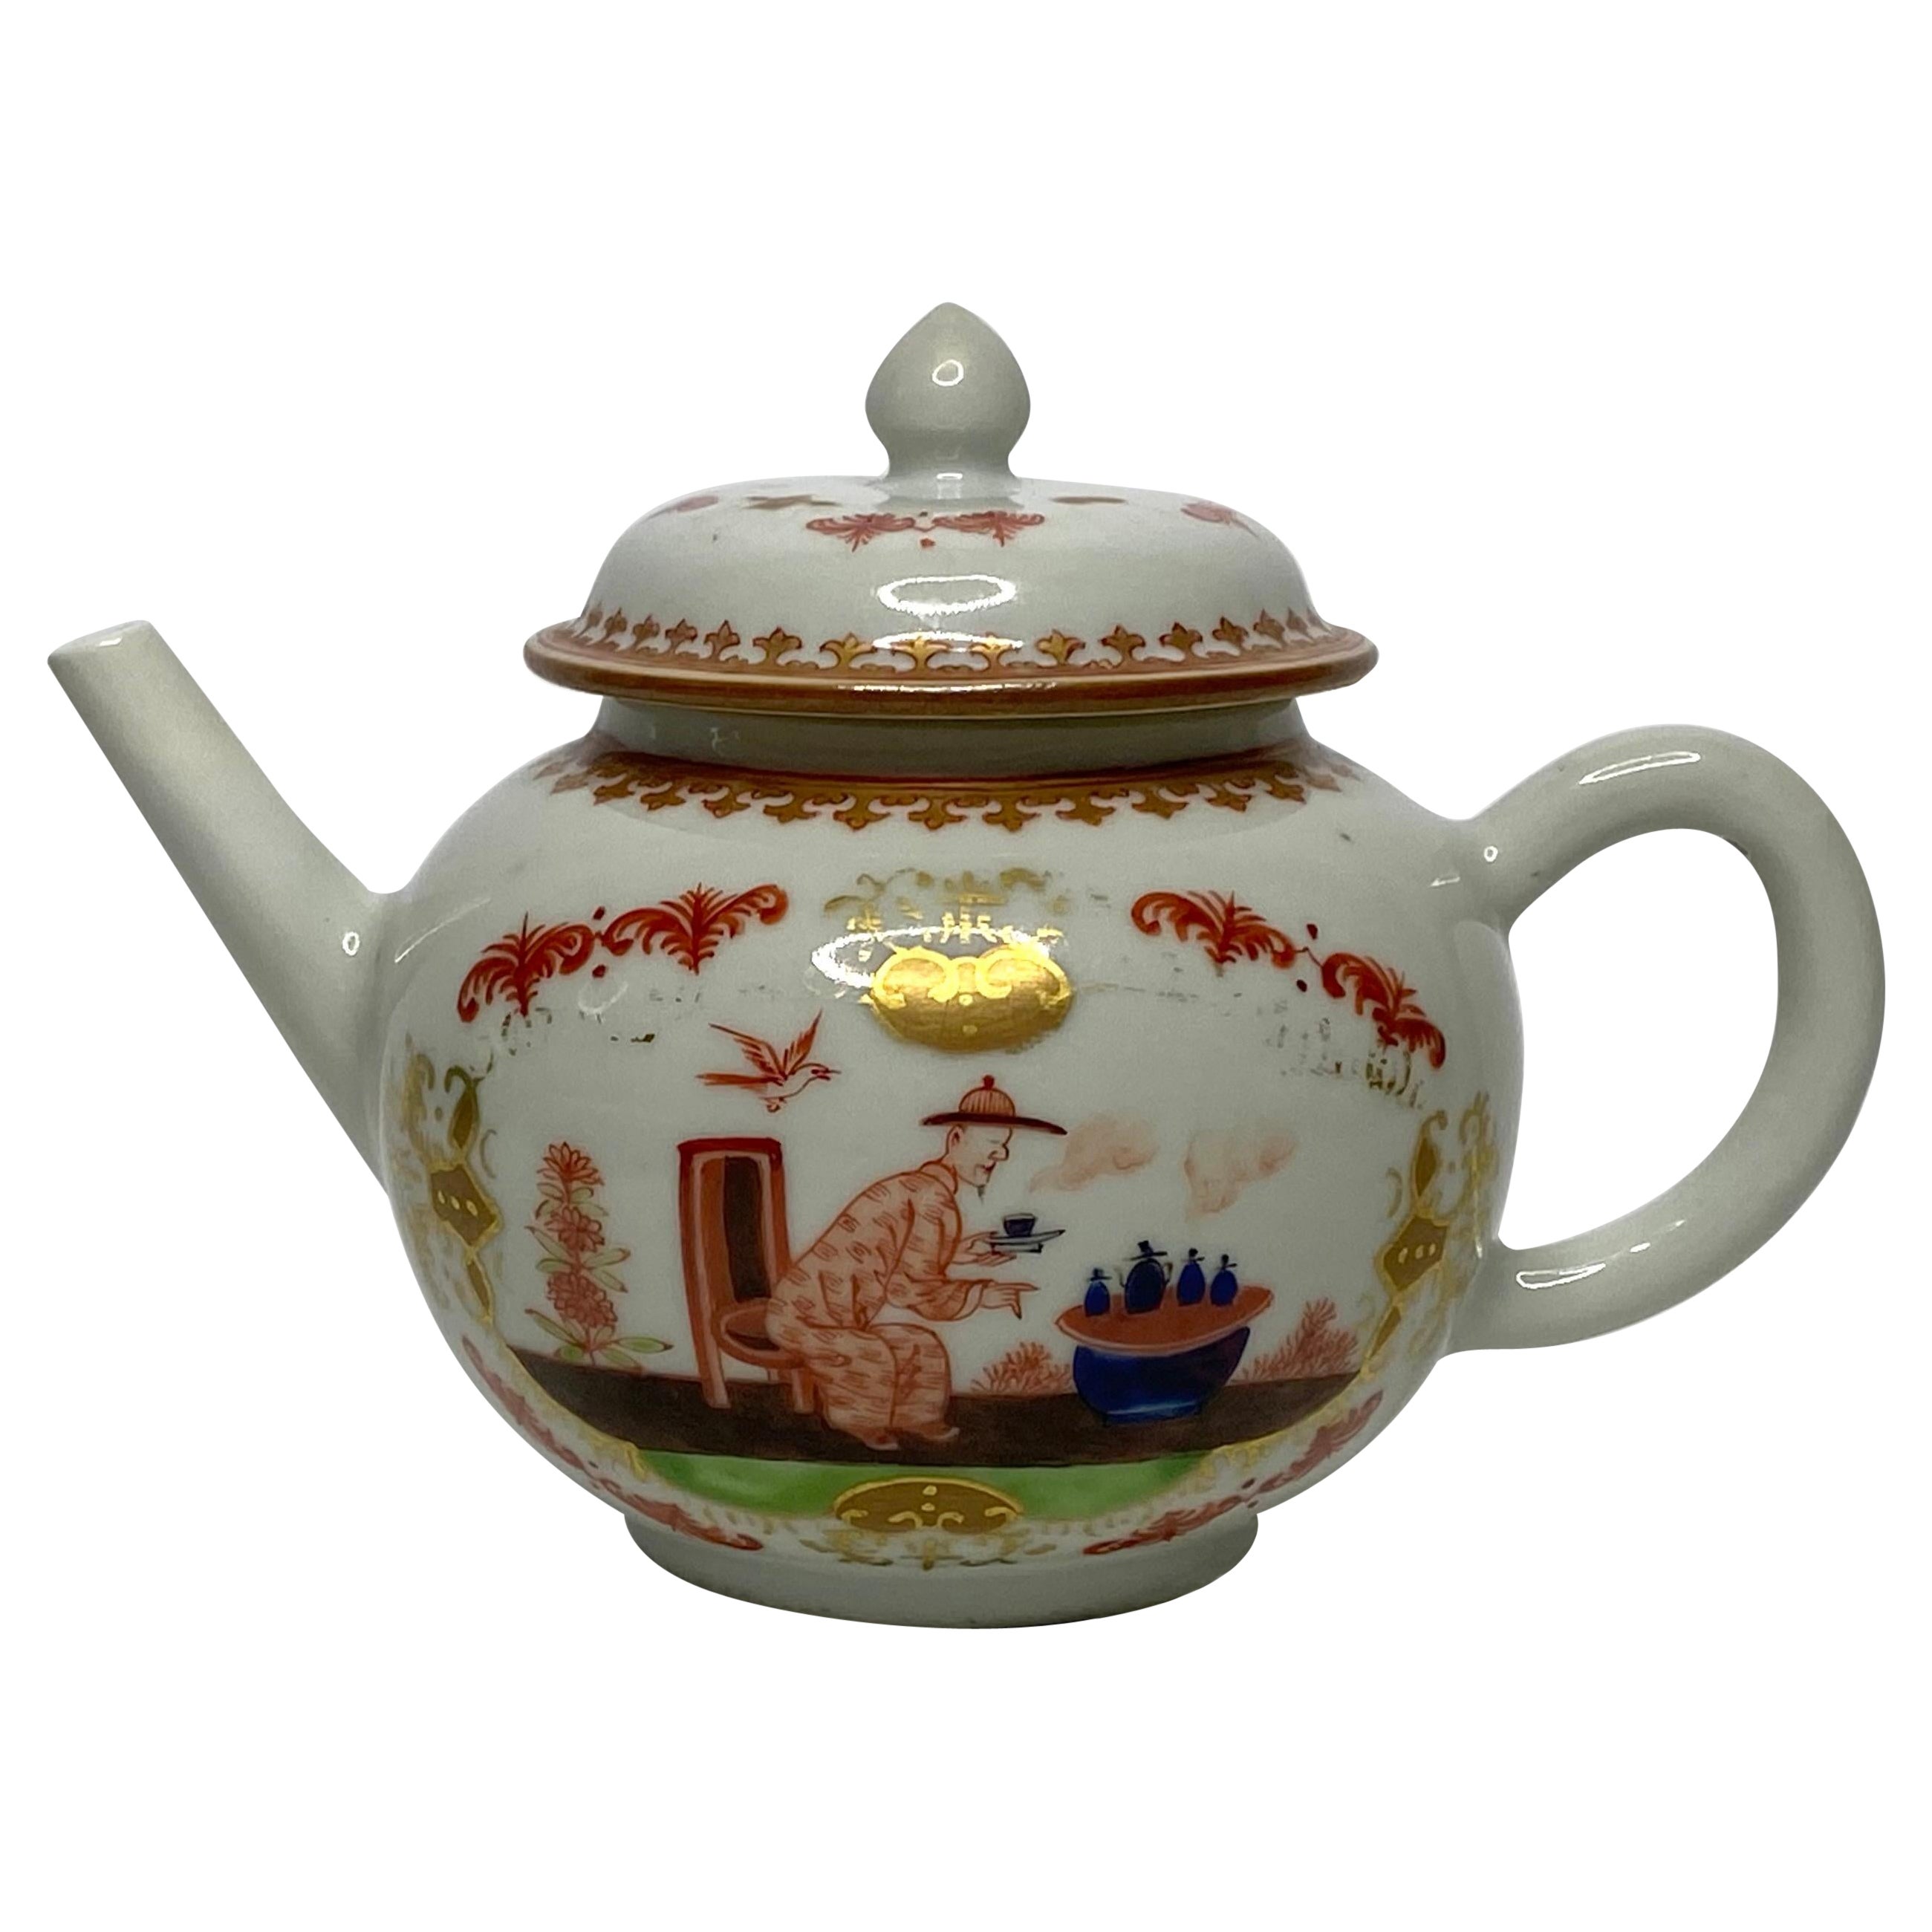 Théière en porcelaine chinoise de style Meissen, vers 1750, période Qianlong.